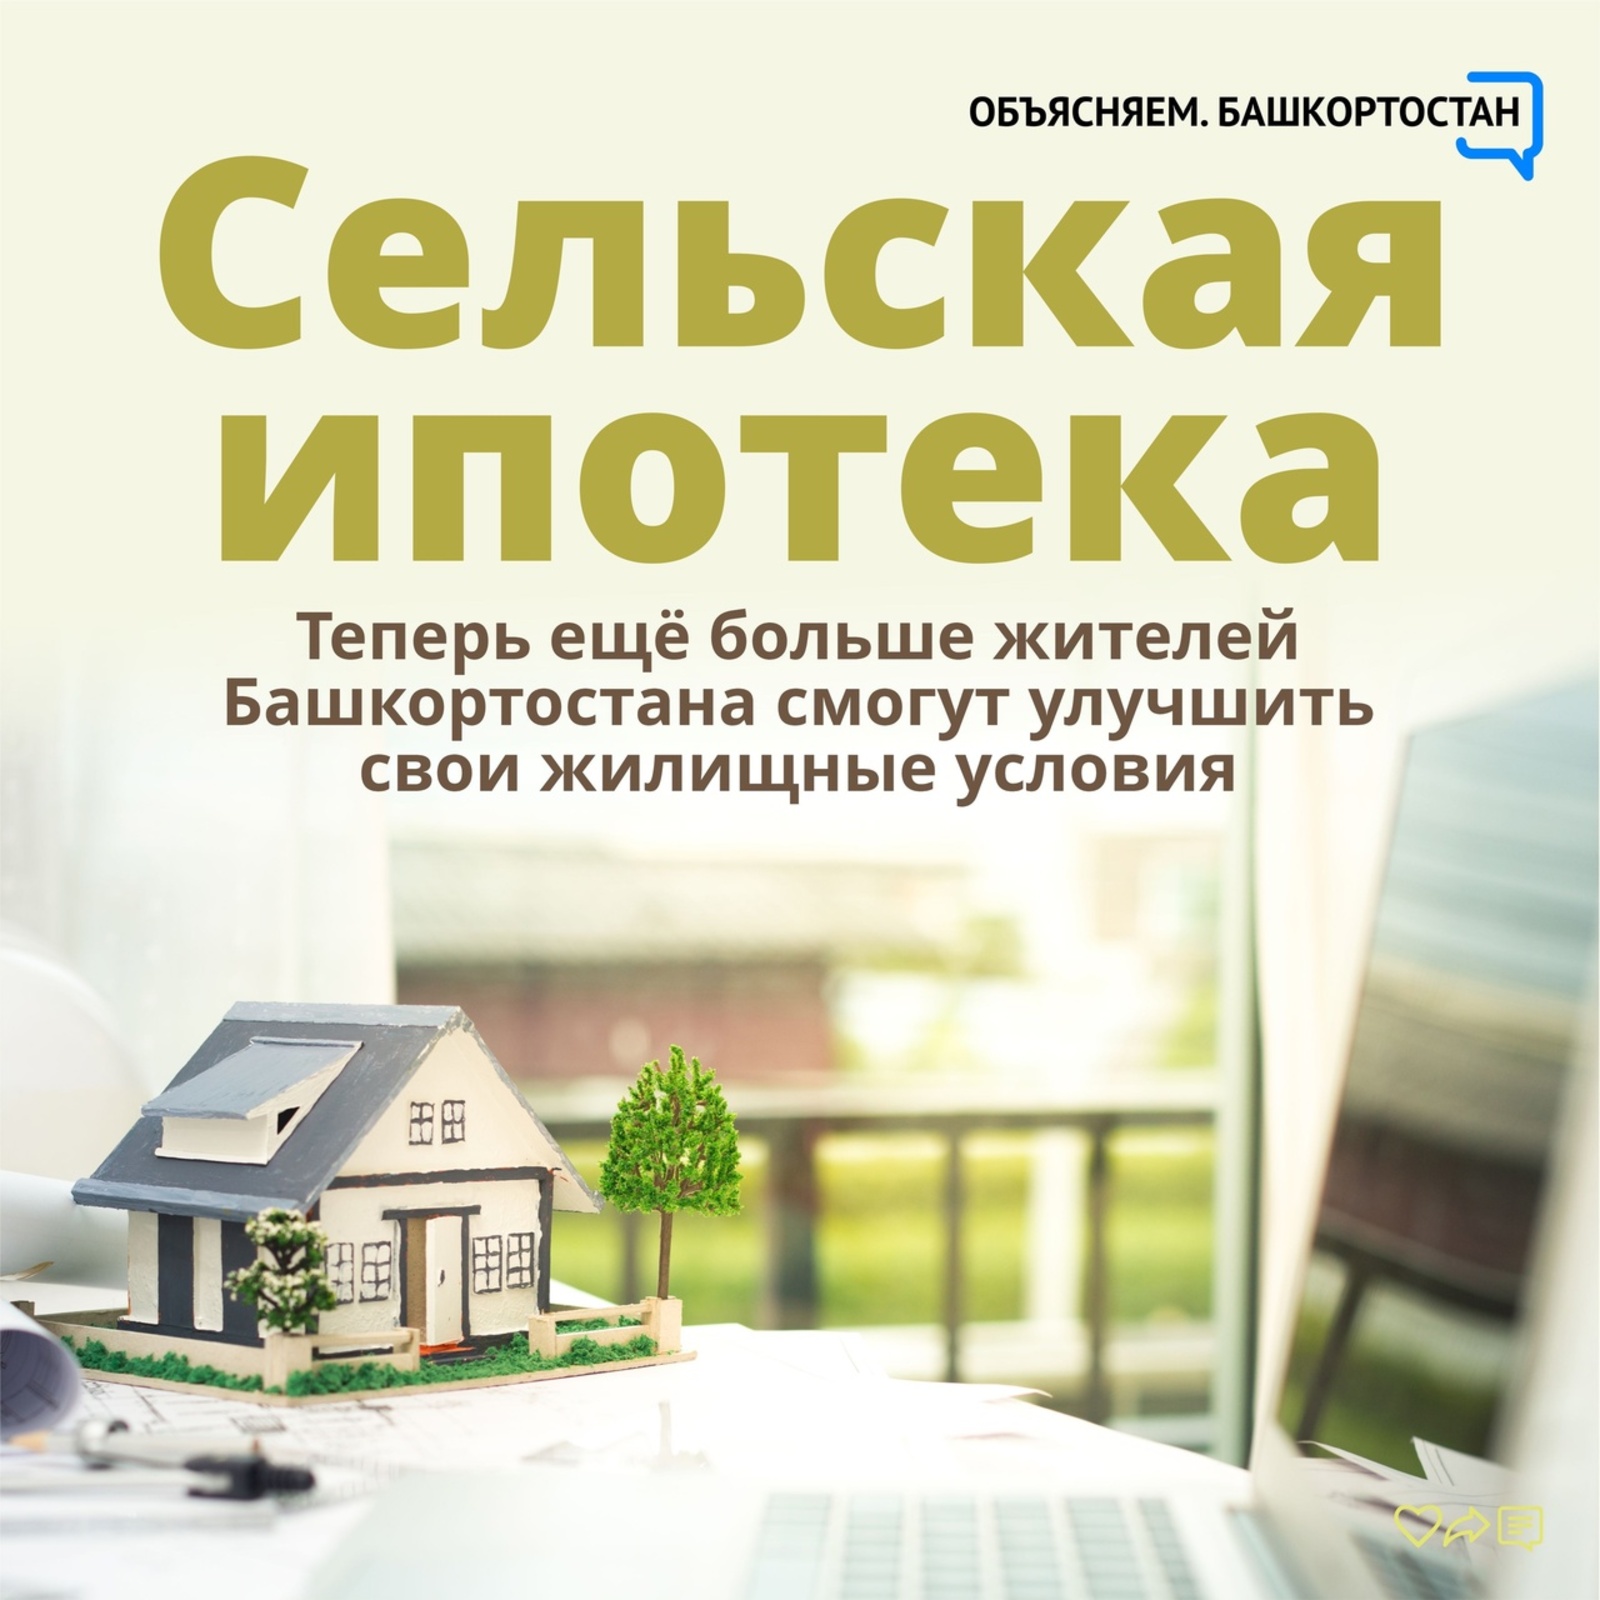 Теперь ещё больше жителей Башкортостана смогут улучшить свои жилищные условия — по программе «Сельская ипотека» можно взять кредит на покупку или строительство дома по ставке от 0,1 до 3% годовых